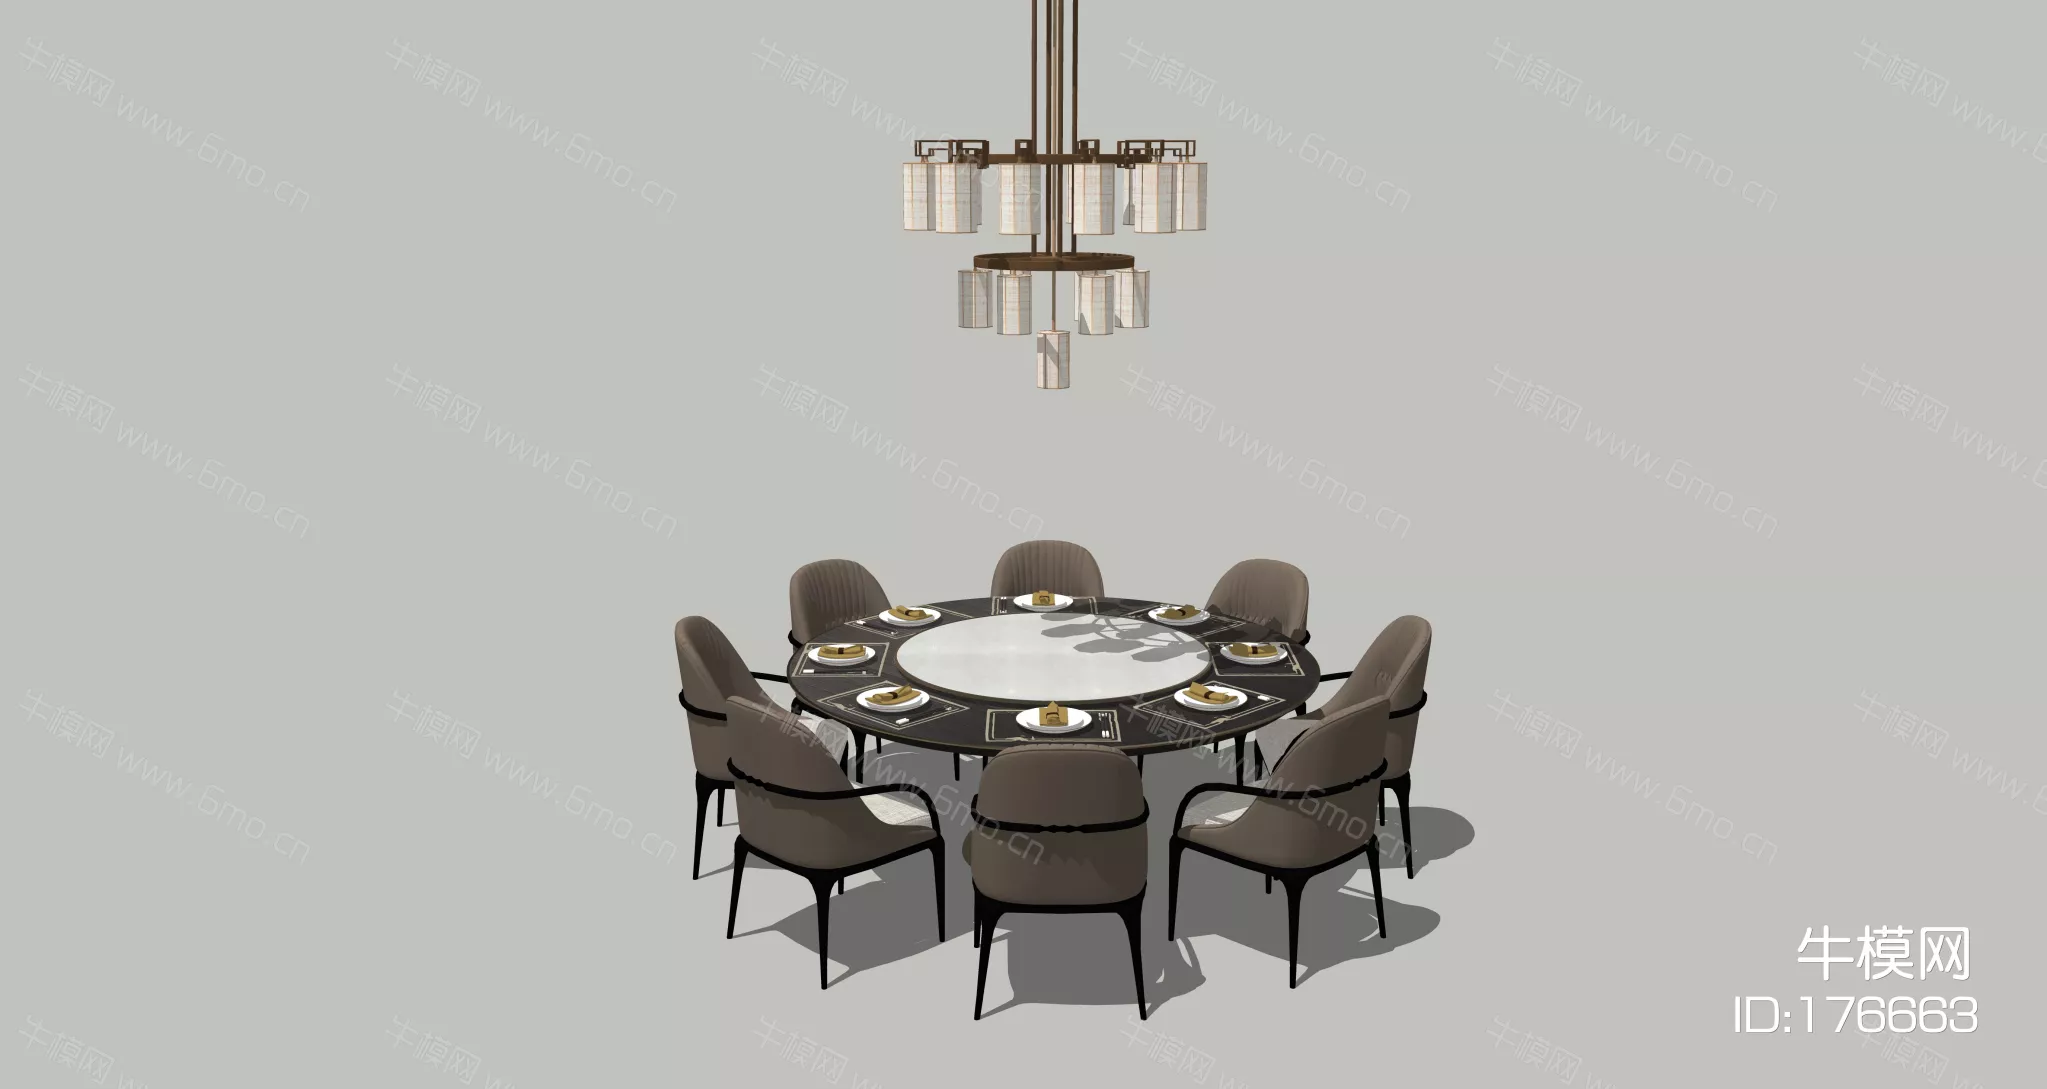 MODERN DINING TABLE SET - SKETCHUP 3D MODEL - ENSCAPE - 176663